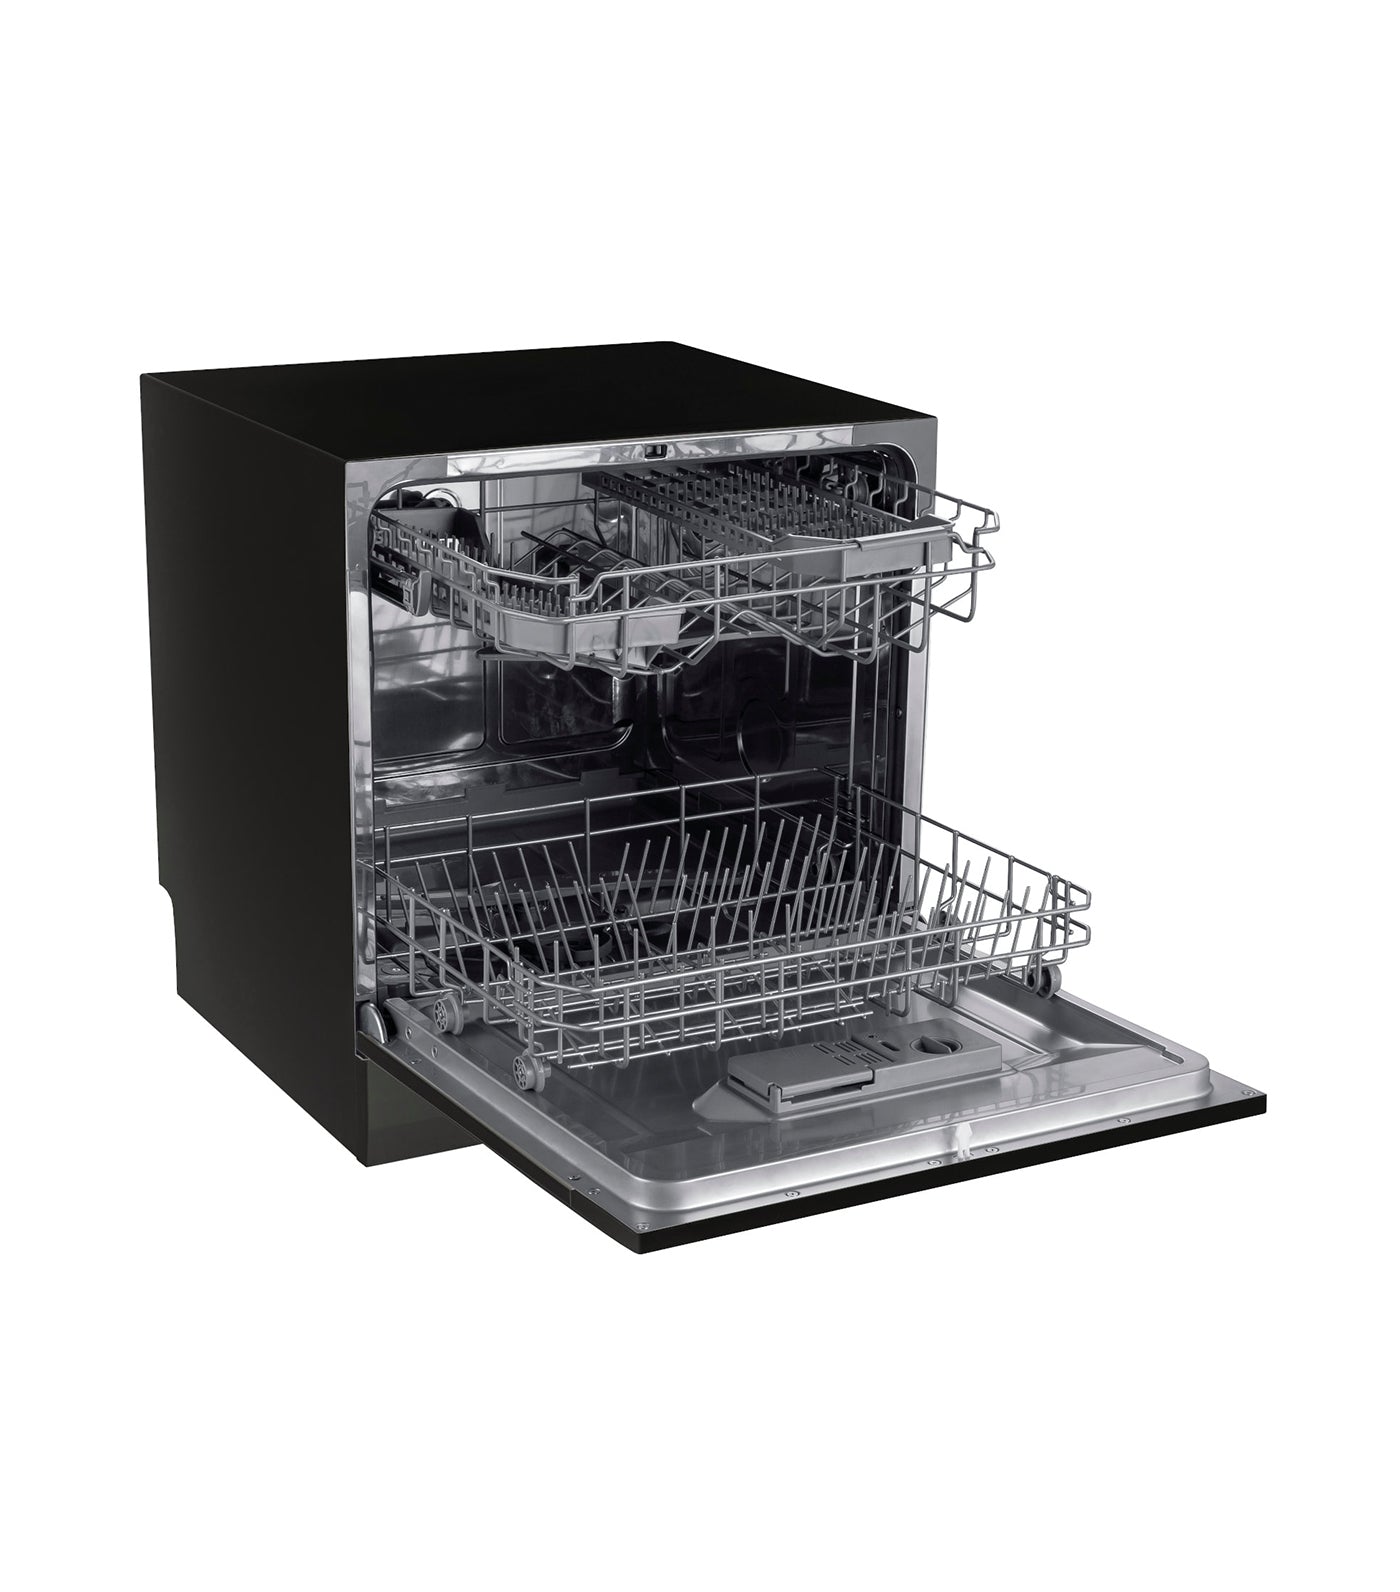  Maximus Jumbo Tabletop Dishwasher with UV - Black